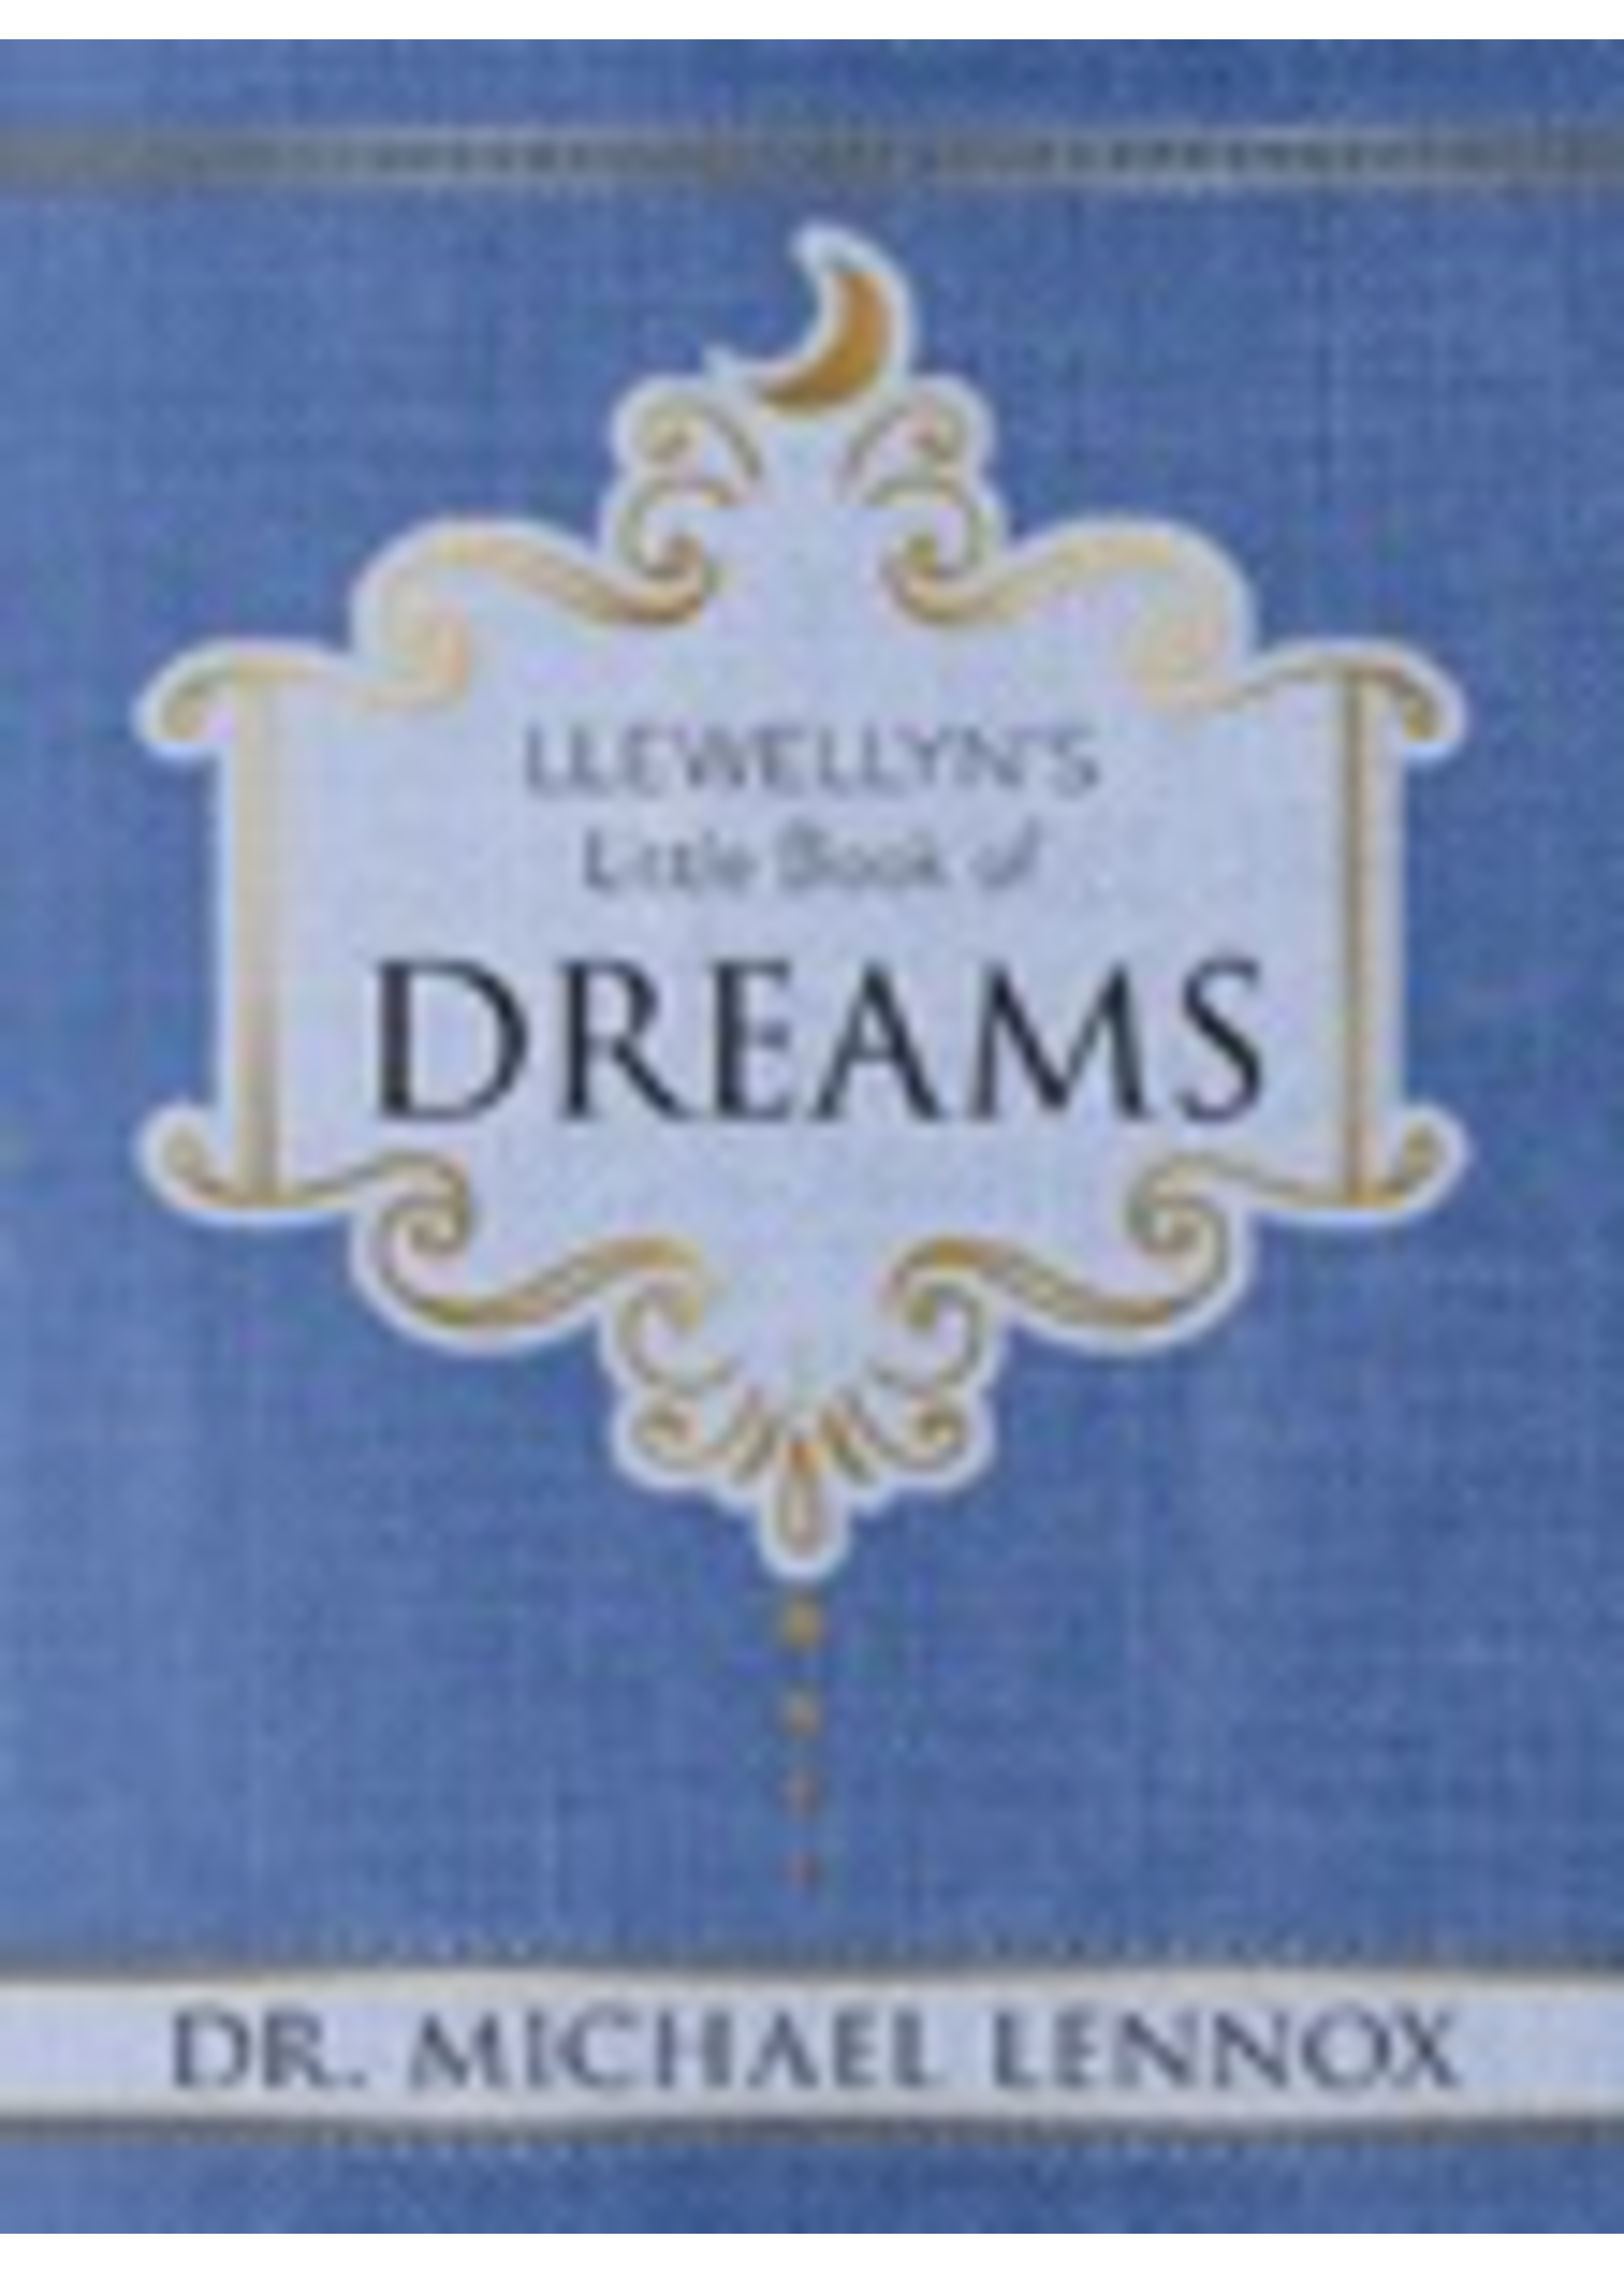 Llewellyn’s Little Book of Dreams